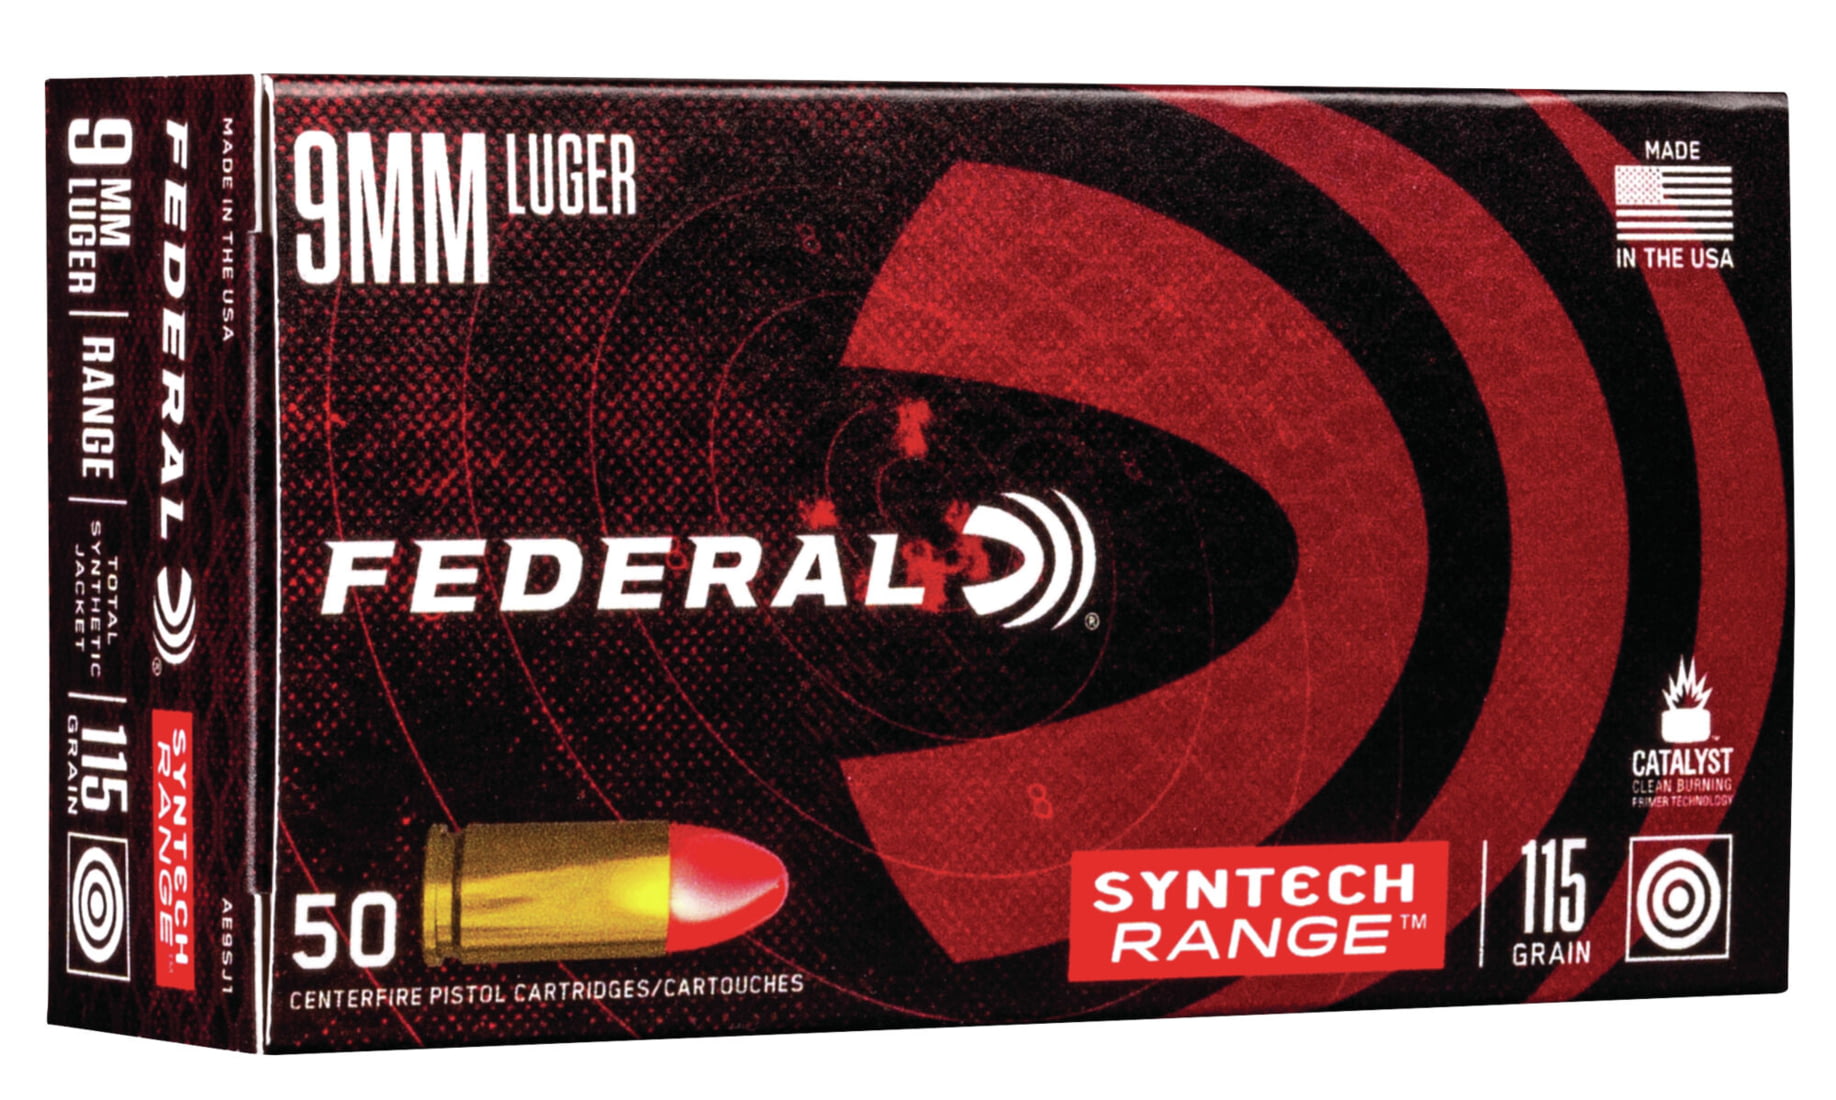 Federal Premium Centerfire Handgun Ammunition 9mm Luger 115 grain Syntech Total Synthetic Jacket Centerfire Pistol Ammunition